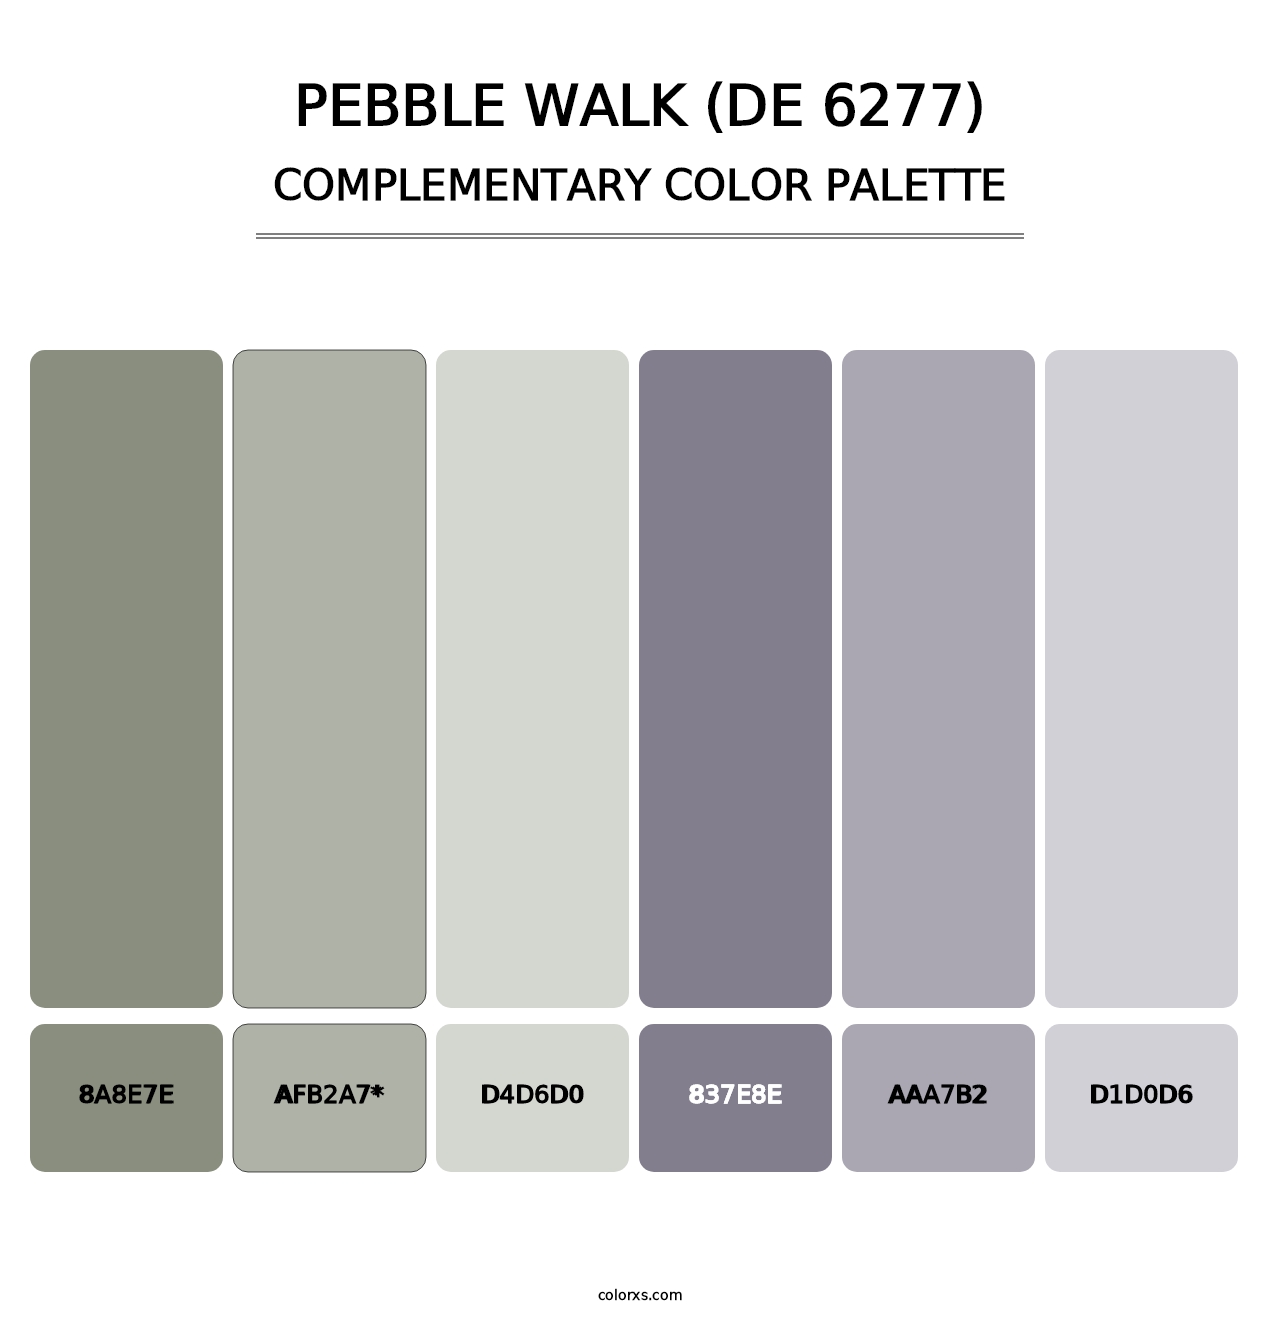 Pebble Walk (DE 6277) - Complementary Color Palette